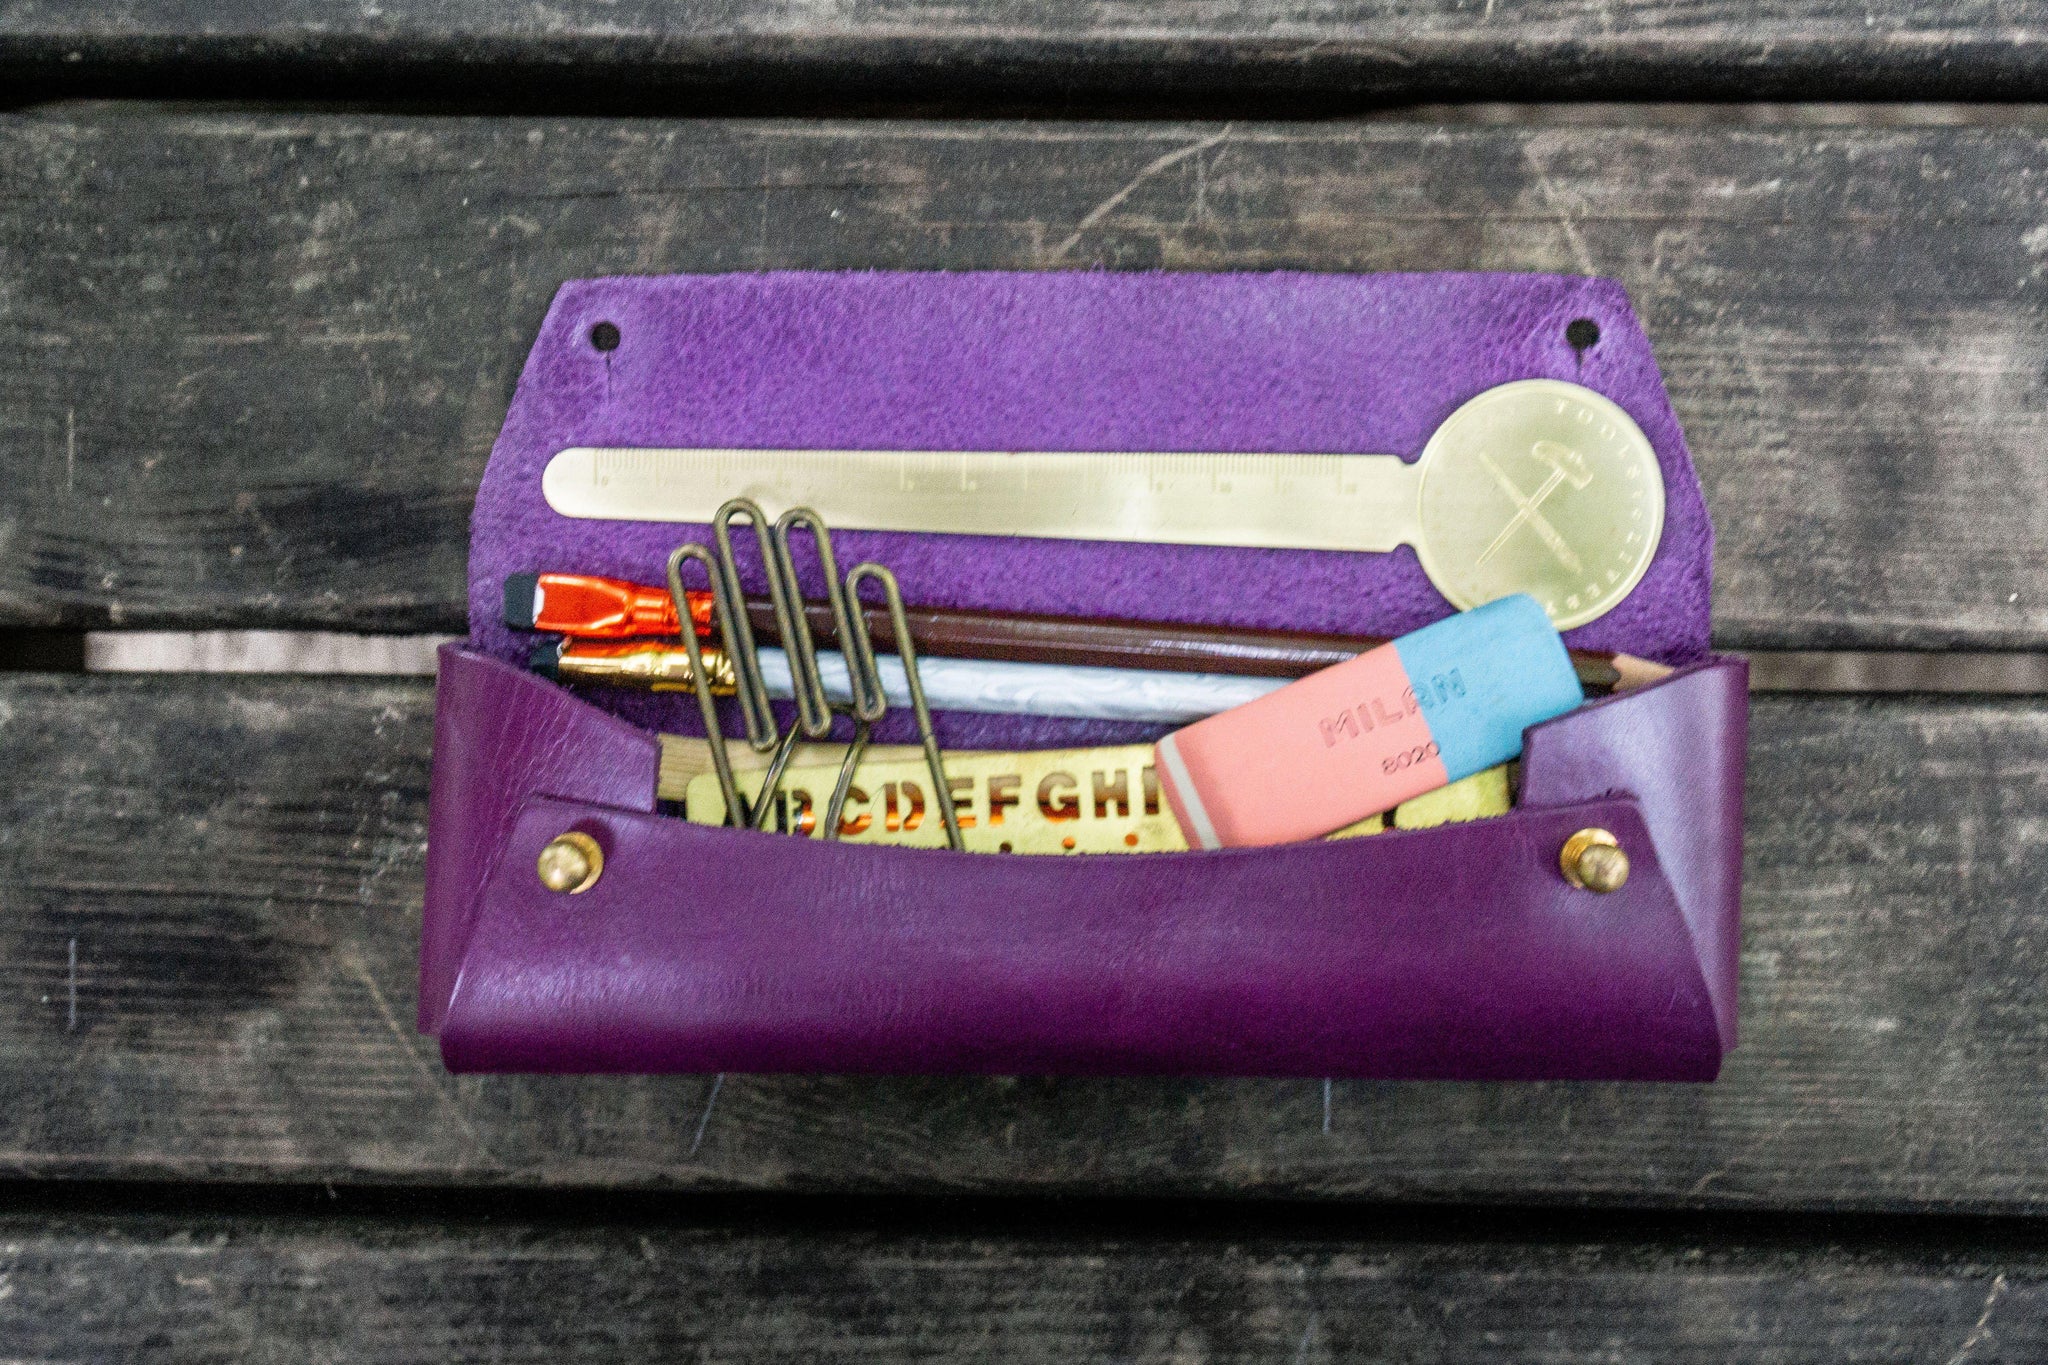 Linen Pencil Case Adult Pen Organizer Purple Brown Tartan Zippered